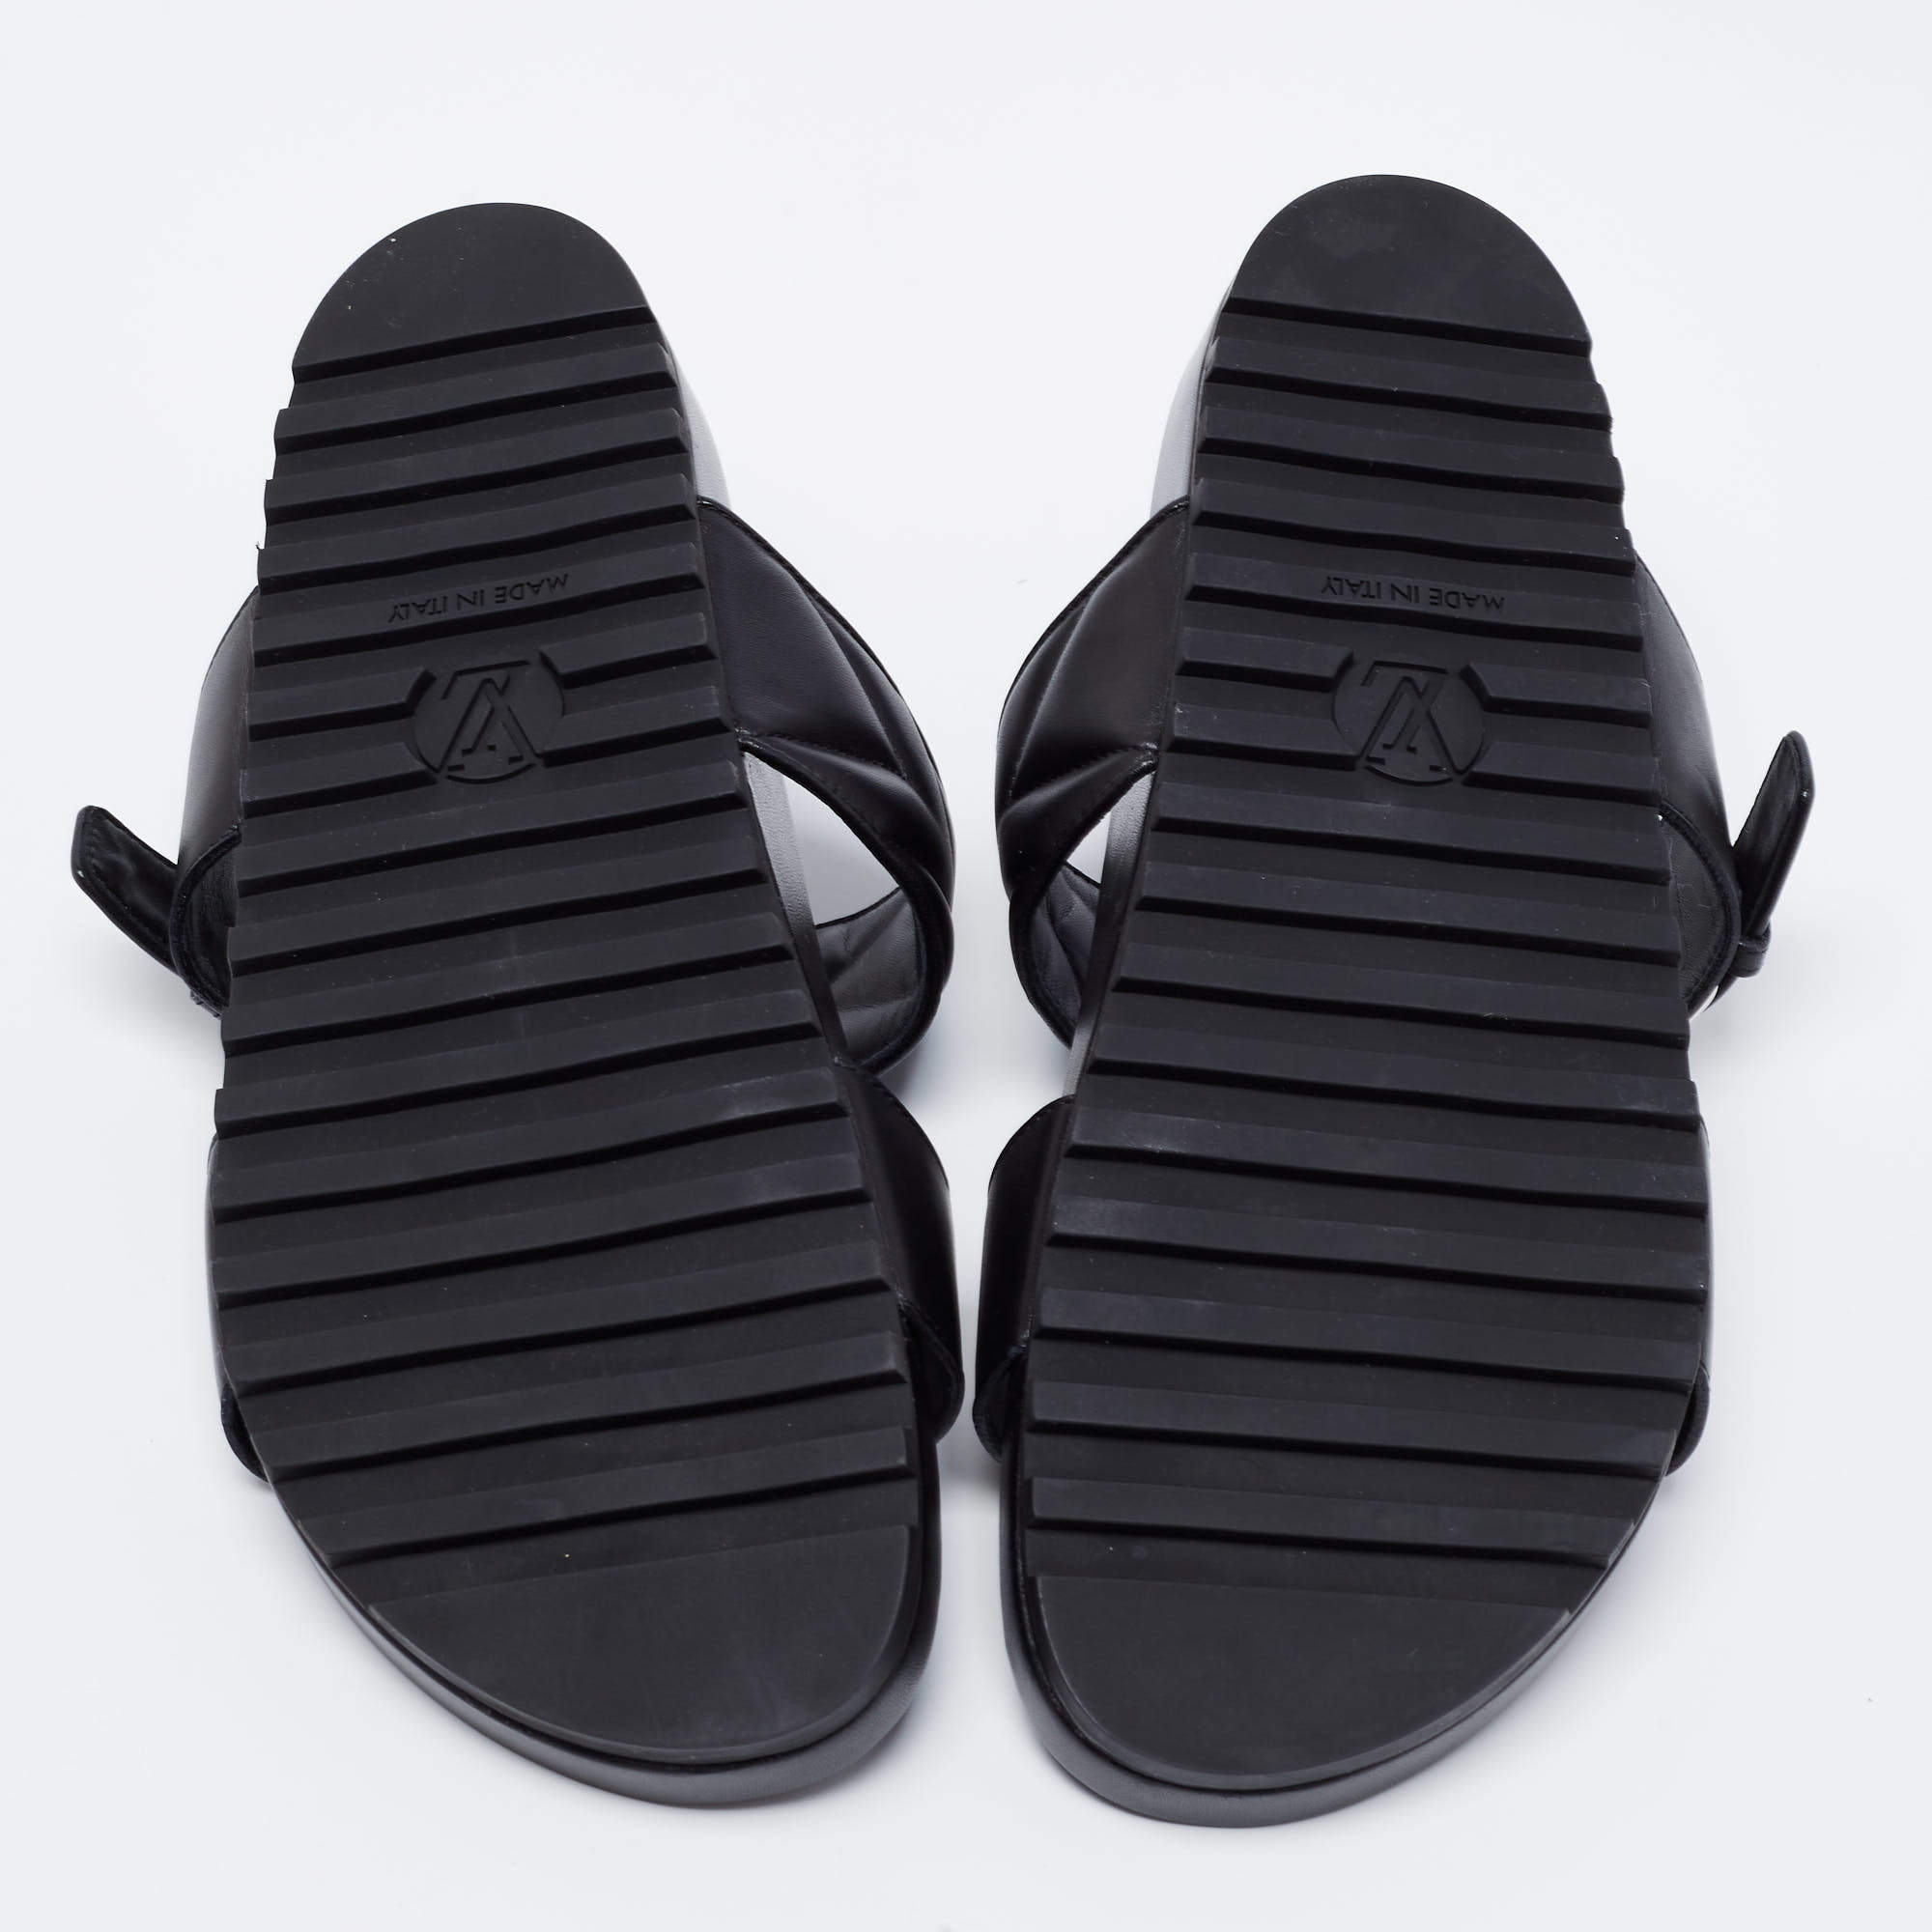 LOUIS VUITTON Calfskin New Wave Bom Dia Mule Sandals 35 Black